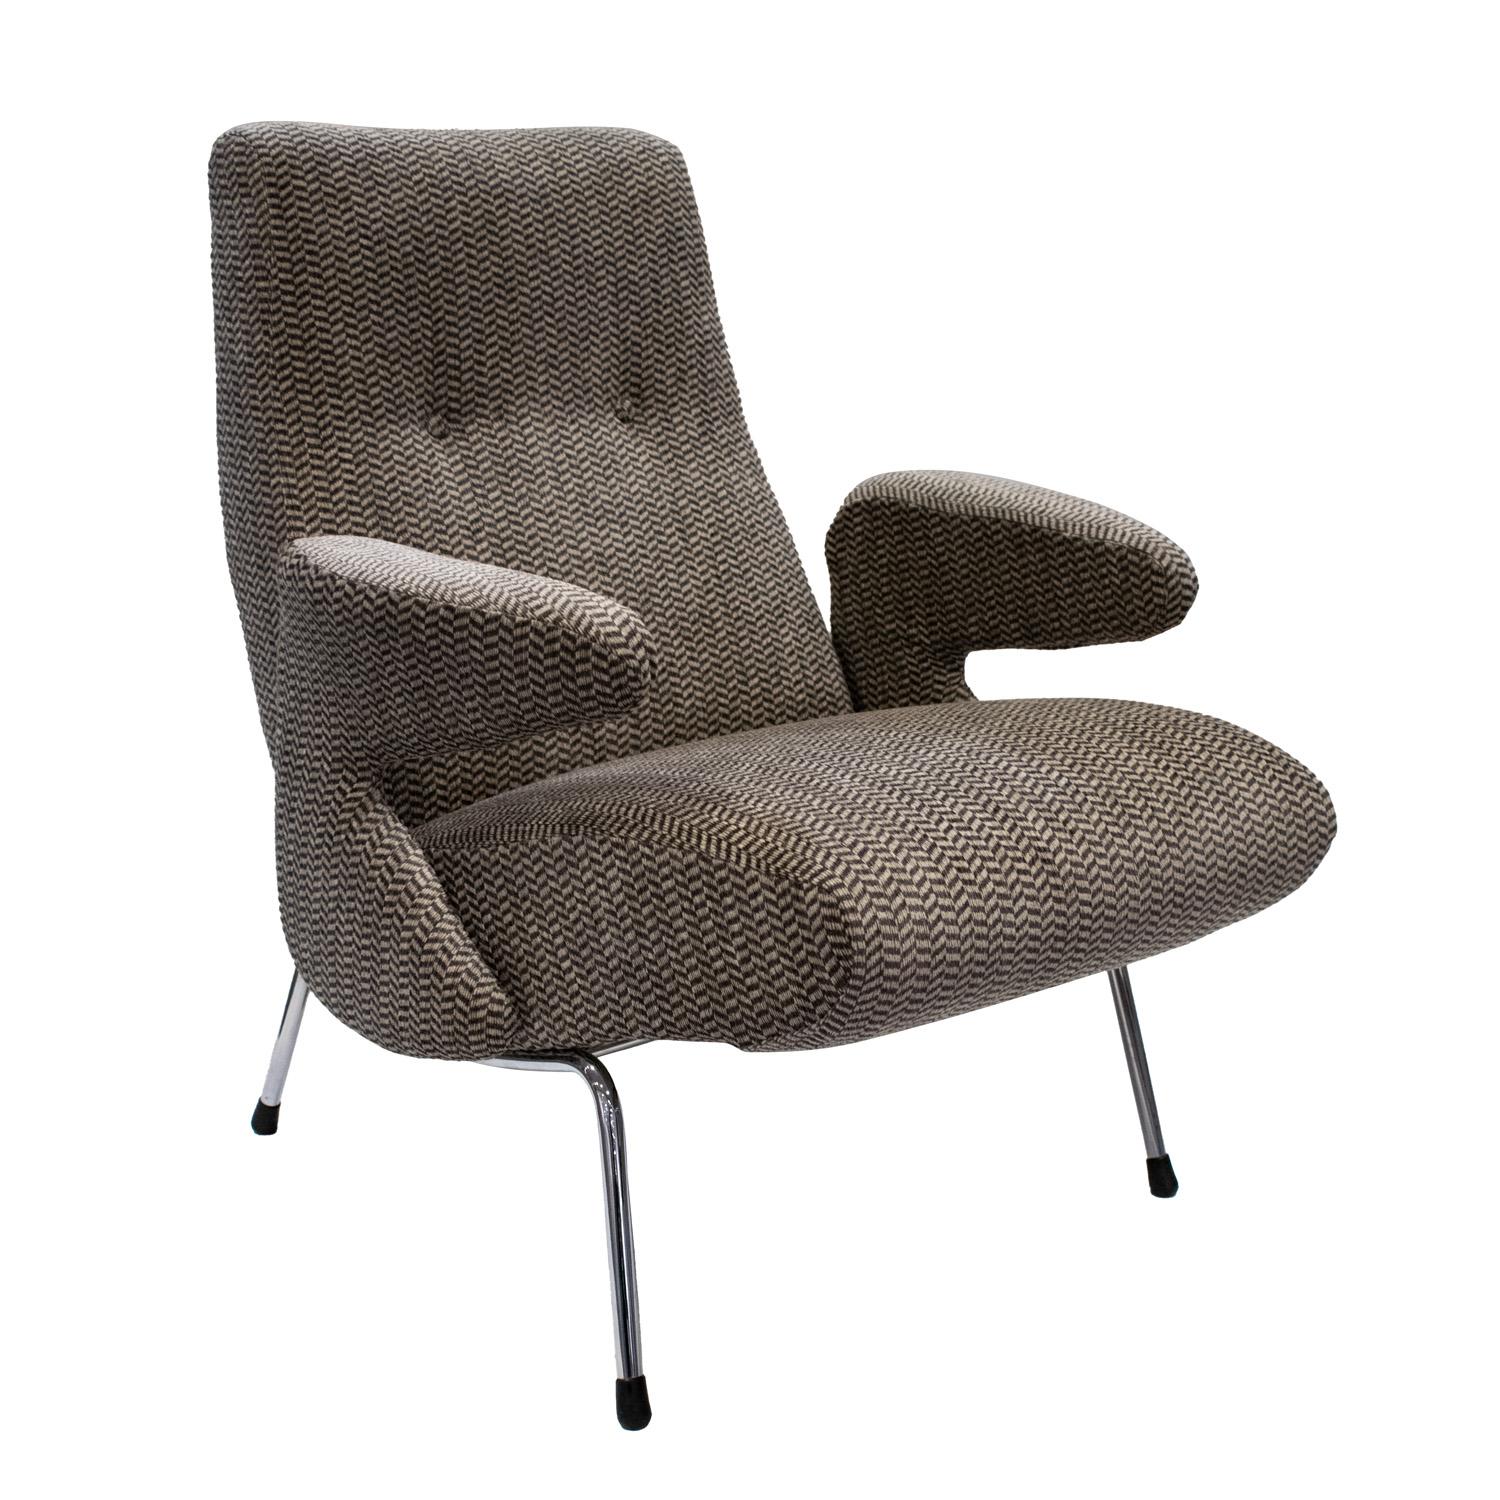 Chaise de salon sculpturale avec base chromée et siège, dossier et accoudoirs rembourrés, Italie, années 1960.  Cette chaise a été récemment retapissée par Lobel Modern dans un tissu magnifique.  Il est extrêmement confortable.